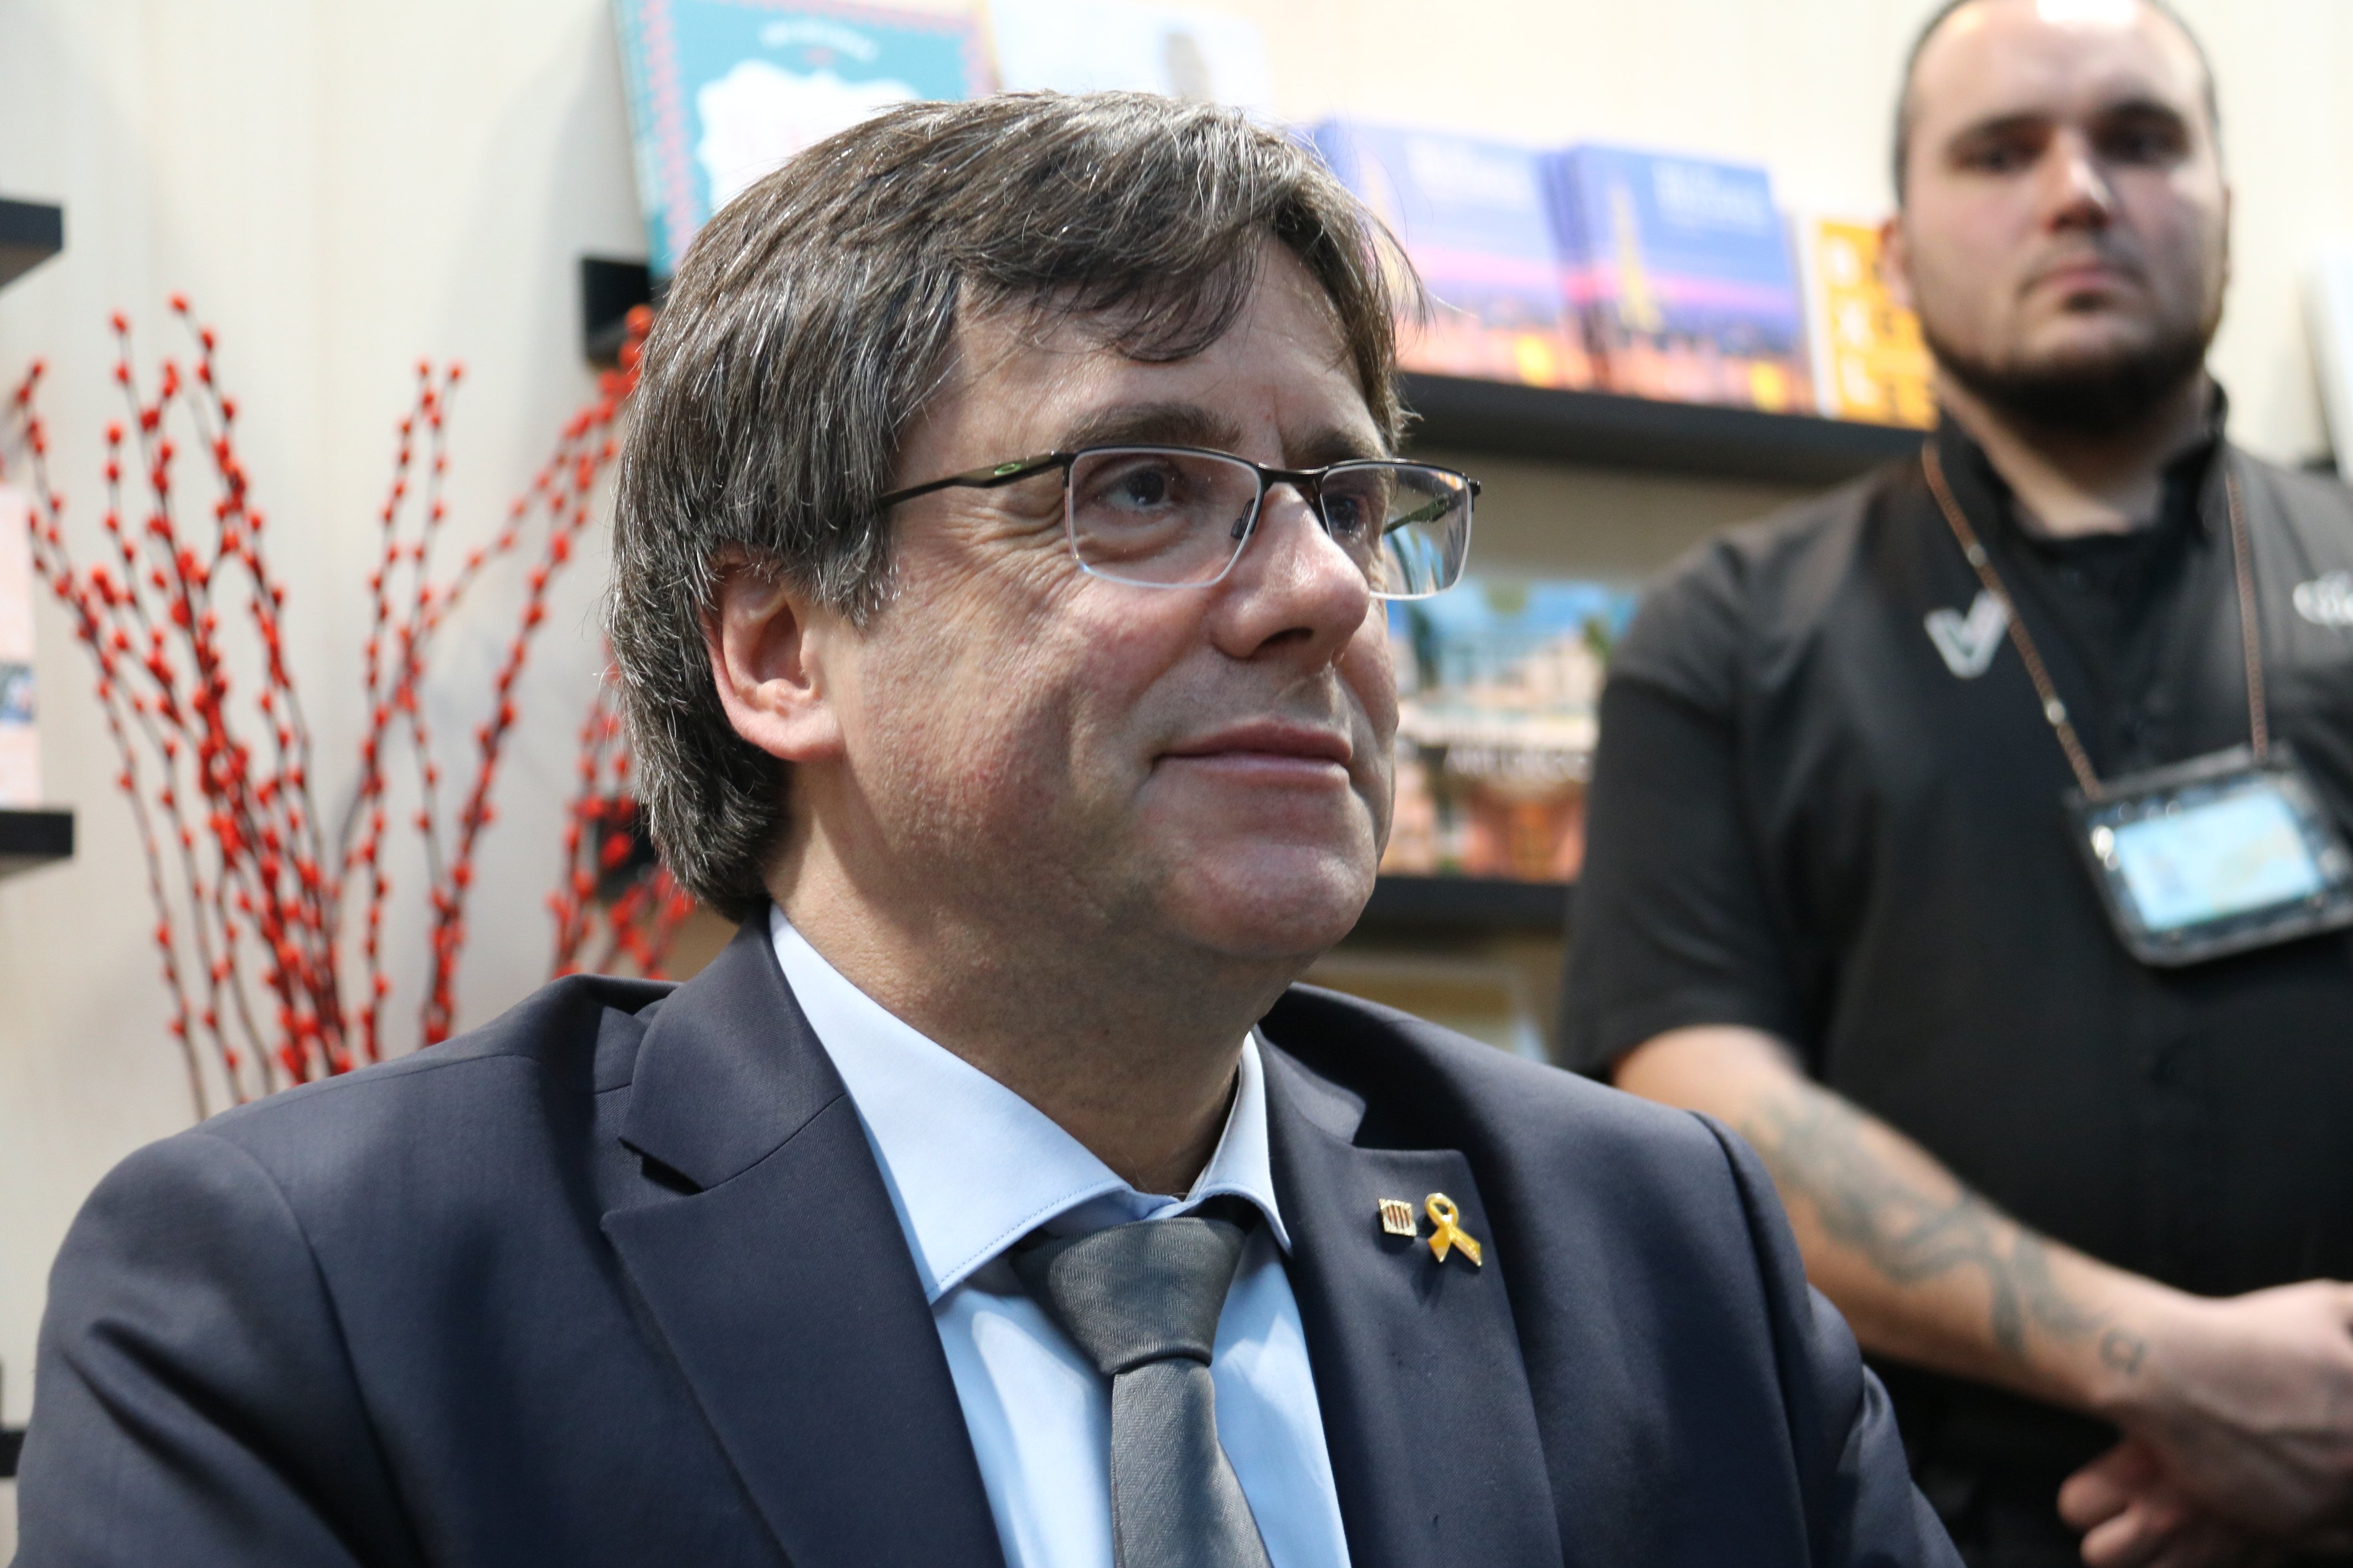 Un fiscal de l’Audiència Nacional, implicat en l’espionatge a Puigdemont